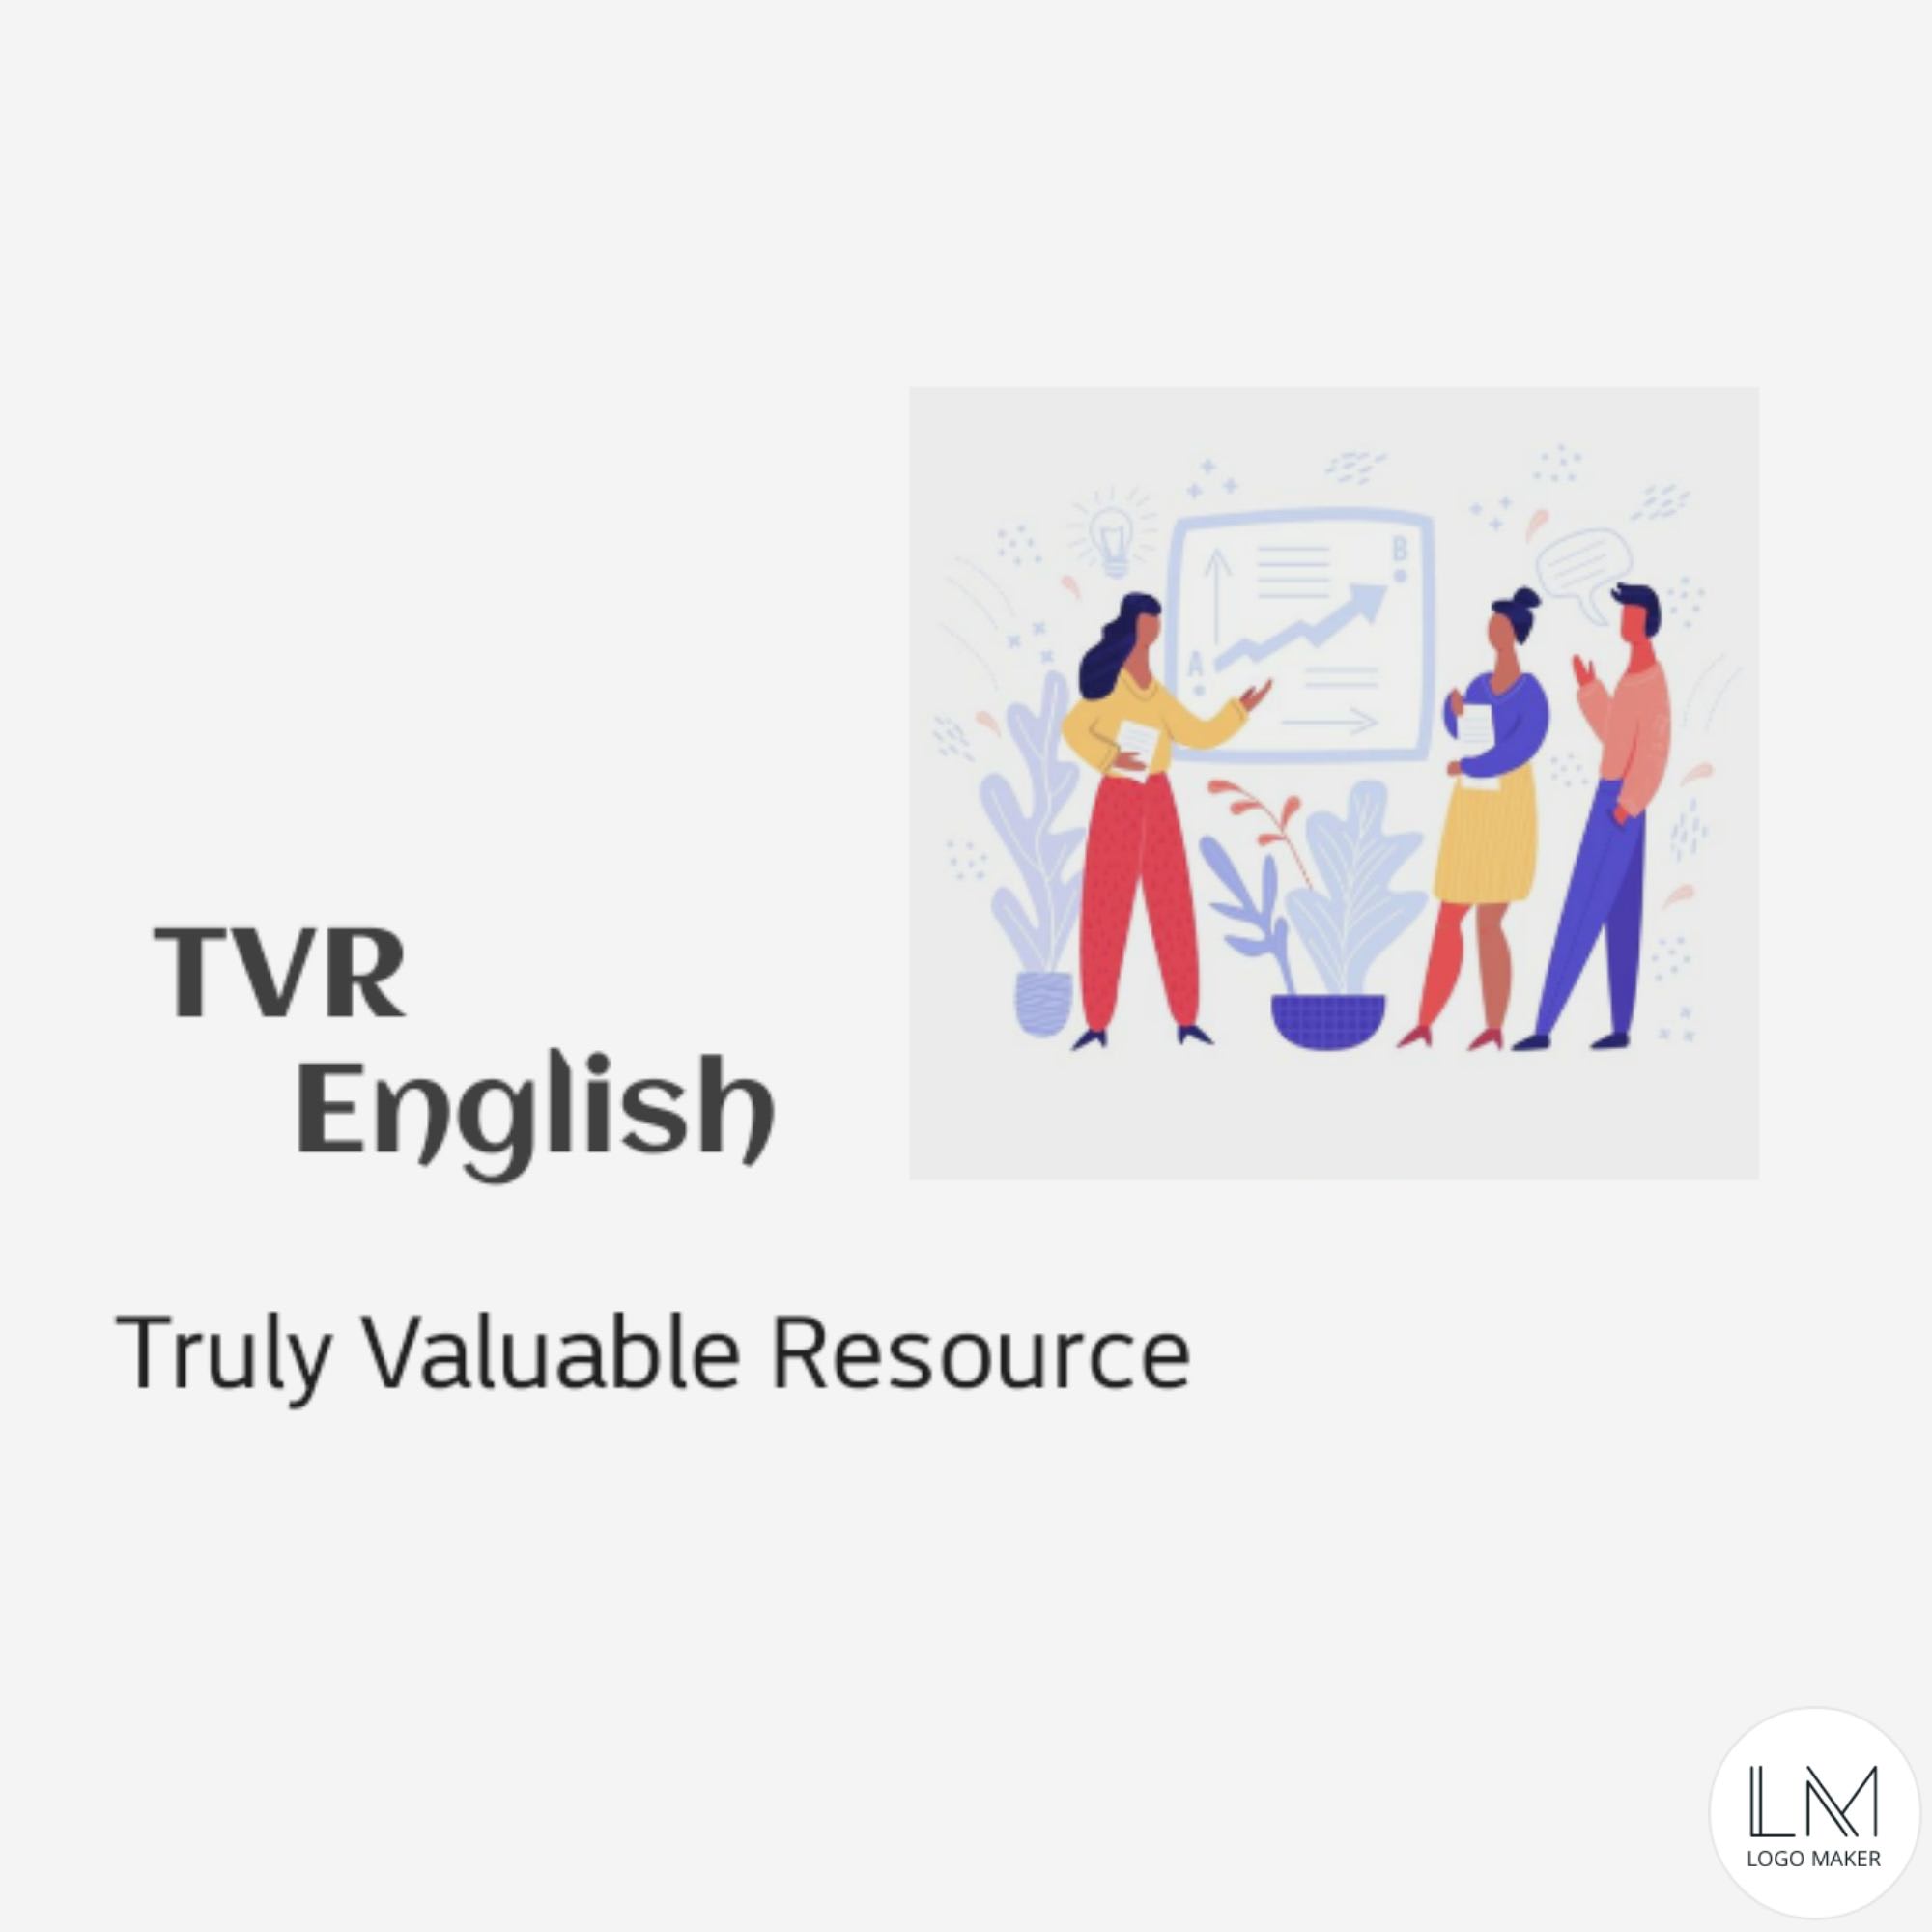 TVR English